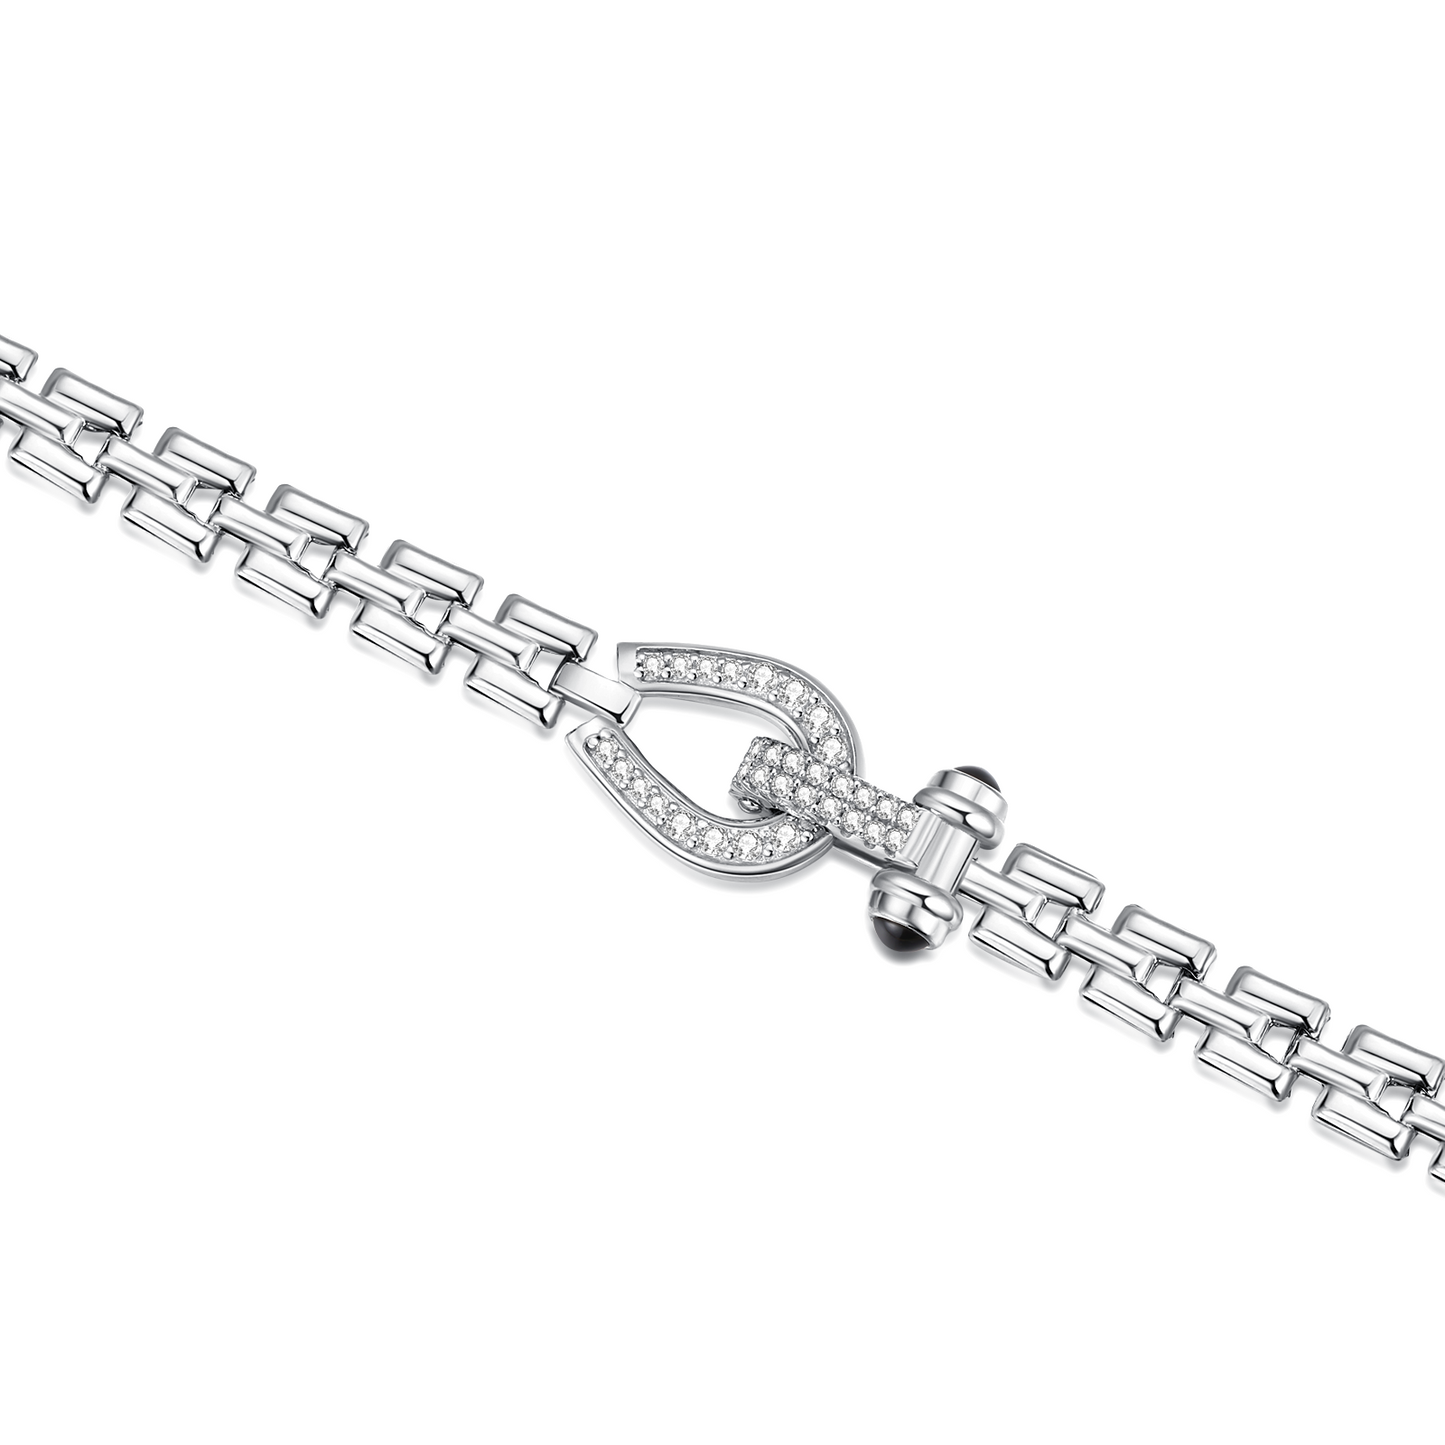 Horseshoe Onyx Watchband Bracelet